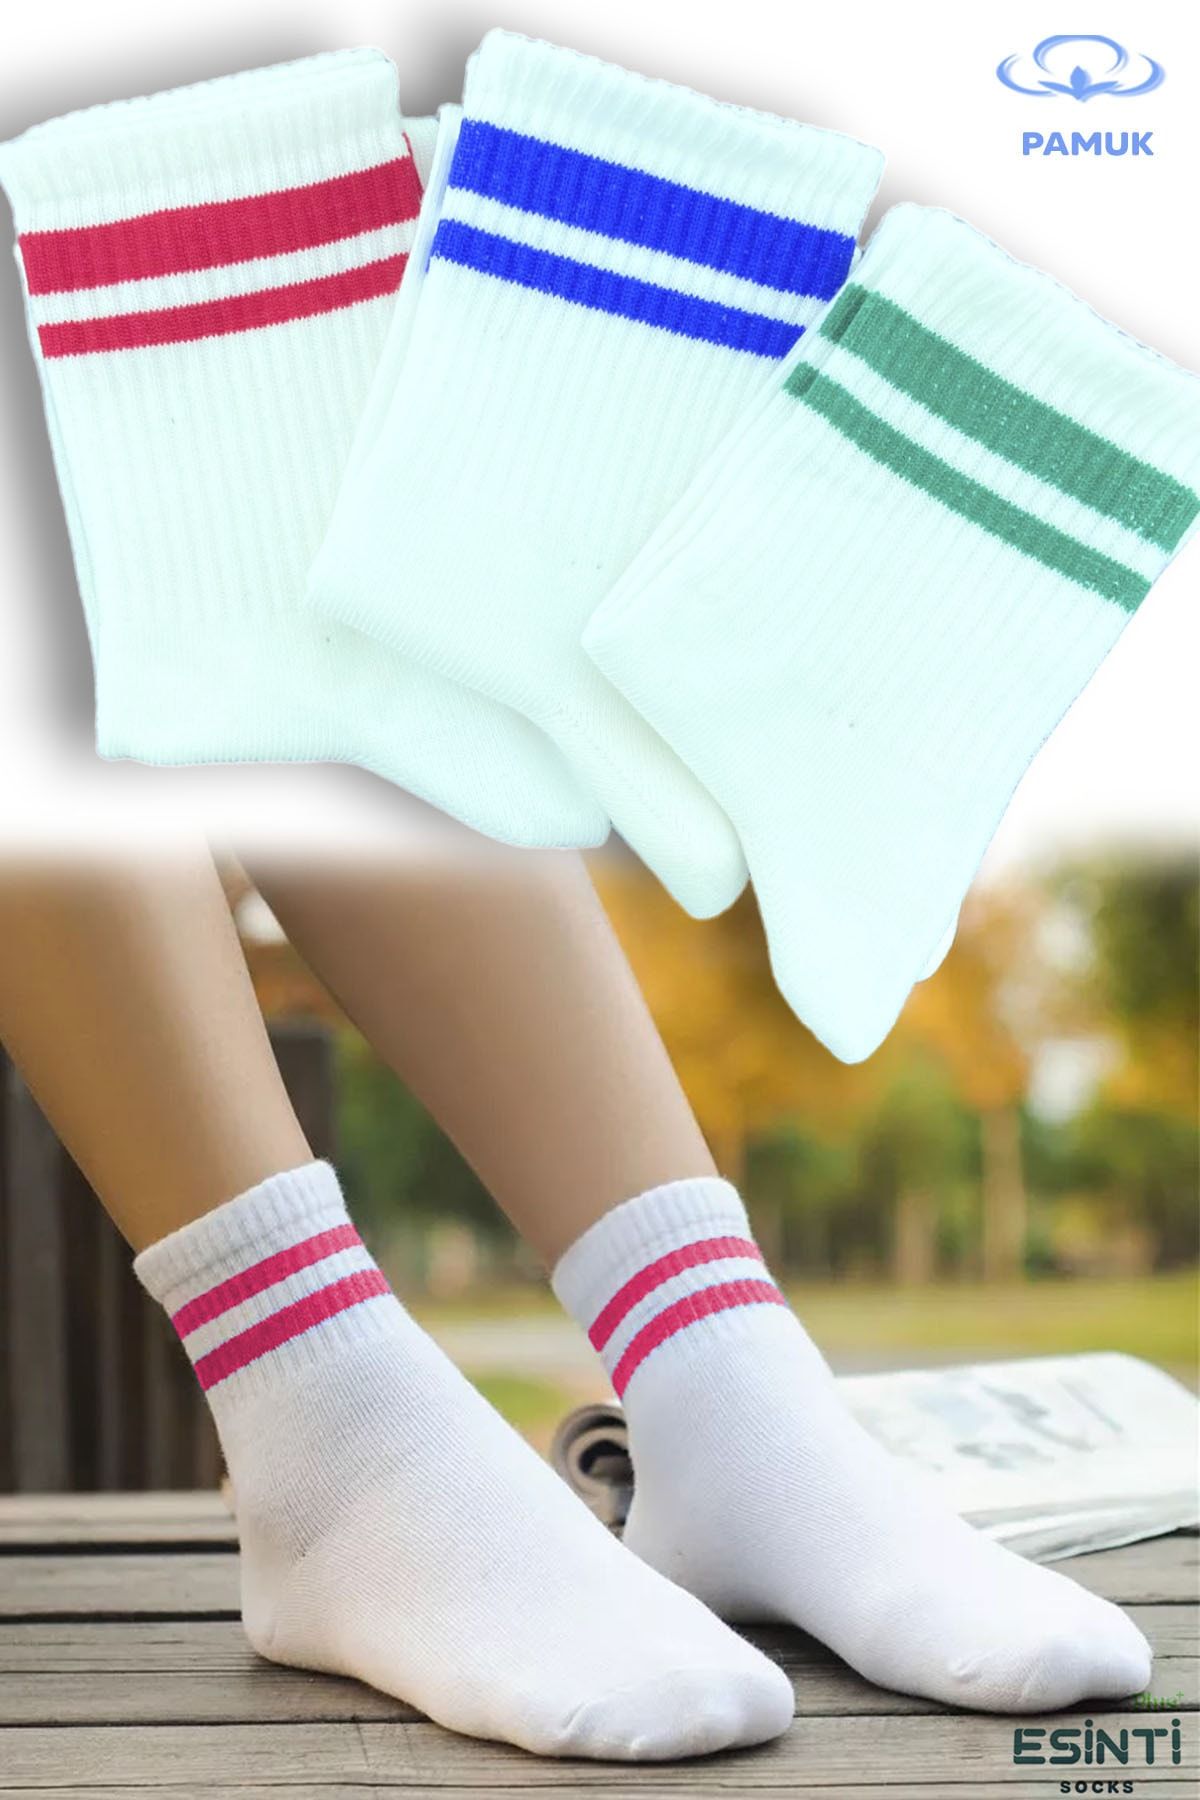 Esinti Erkek Çorap Kadın Çorap Uzun Spor Çorapları Desenli Soket Çorap Renkli Çorap 3 Adet